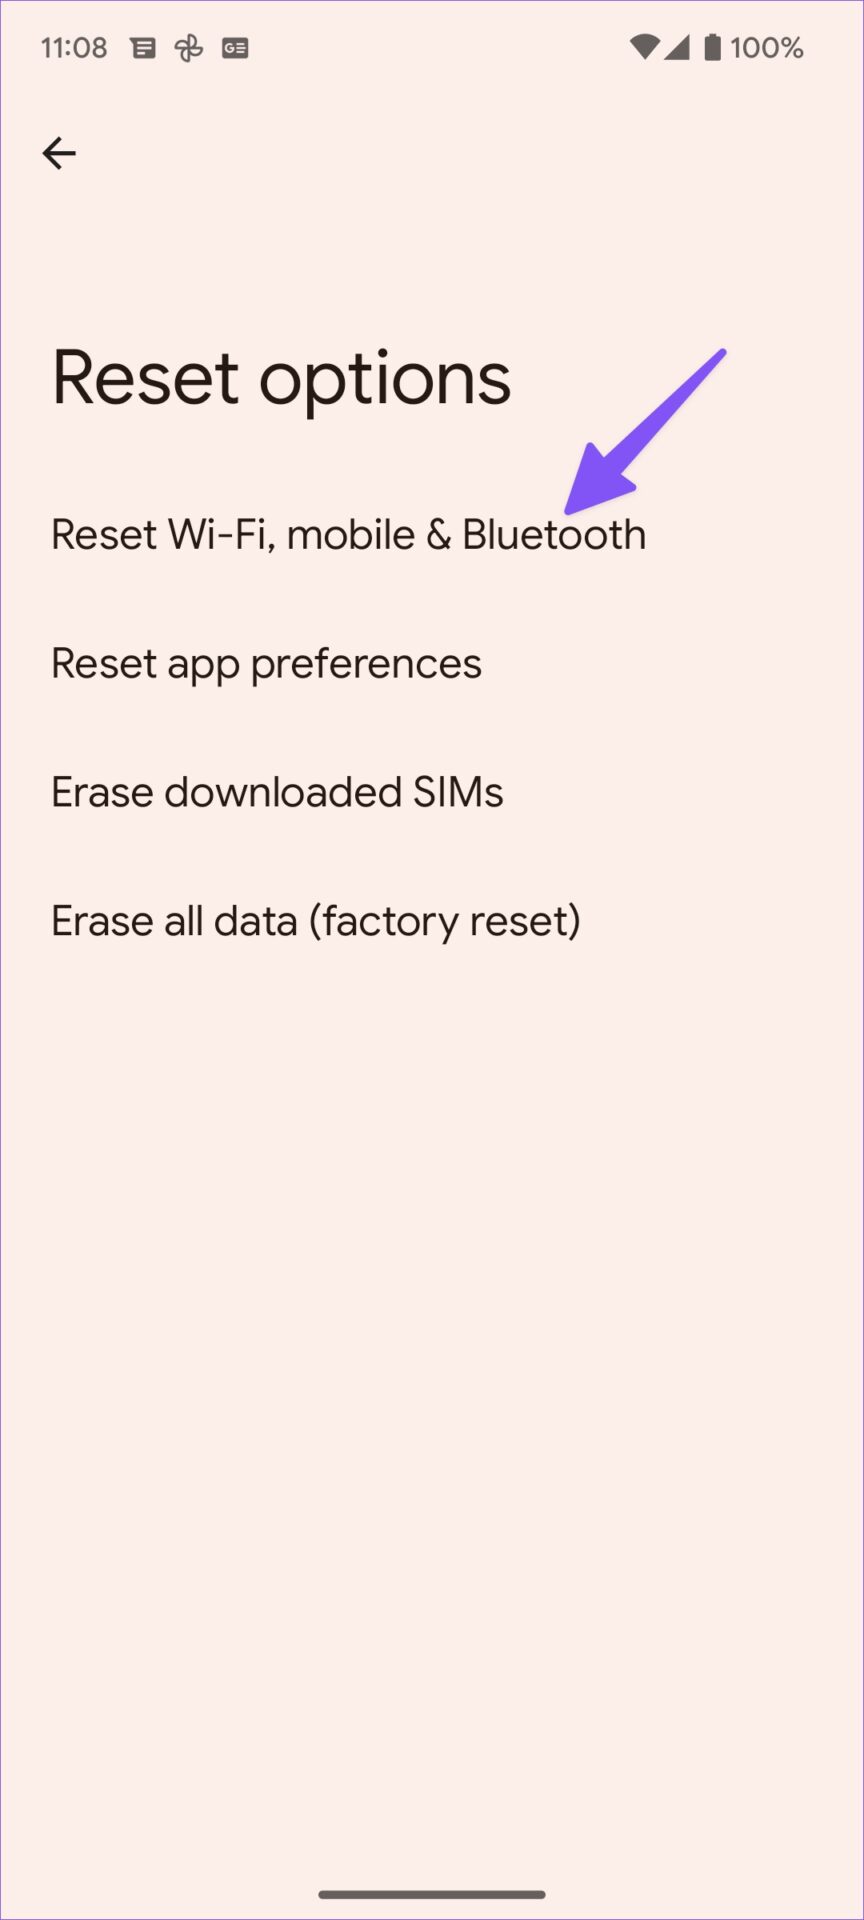 Nhấn vào “Reset Wi-Fi, mobile & Bluetooth”